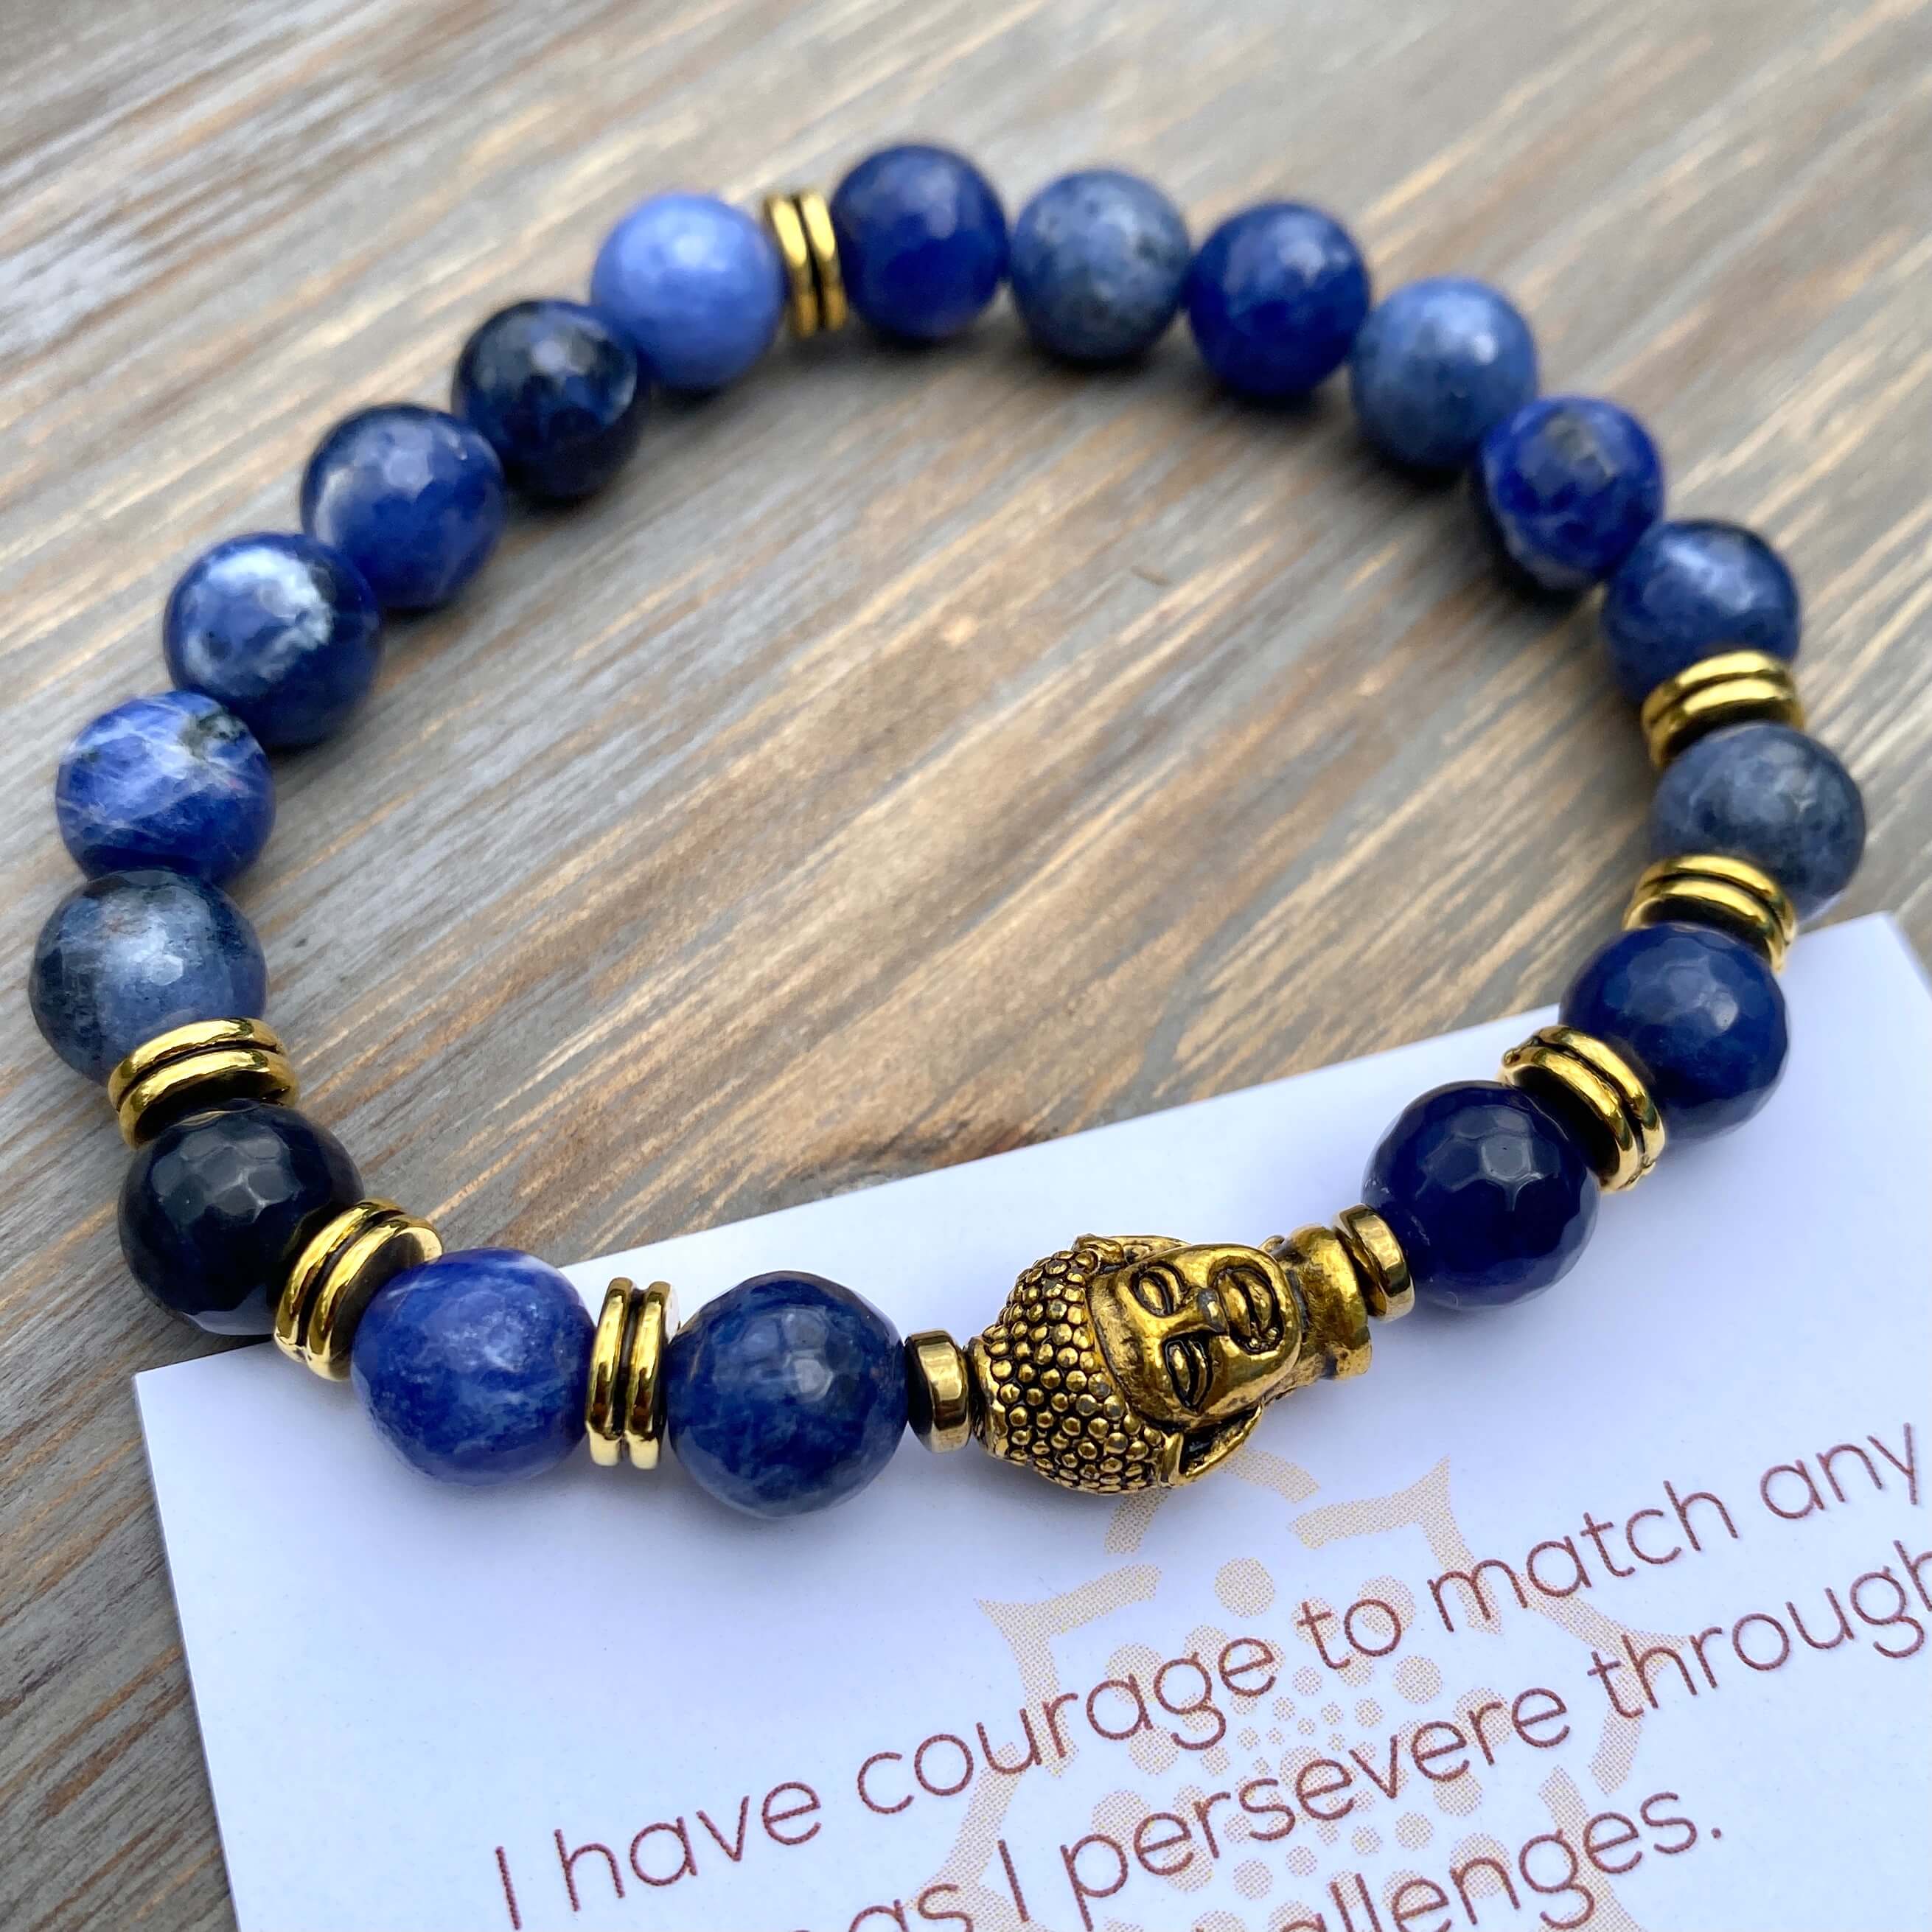 The Serenity Buddha Bracelet